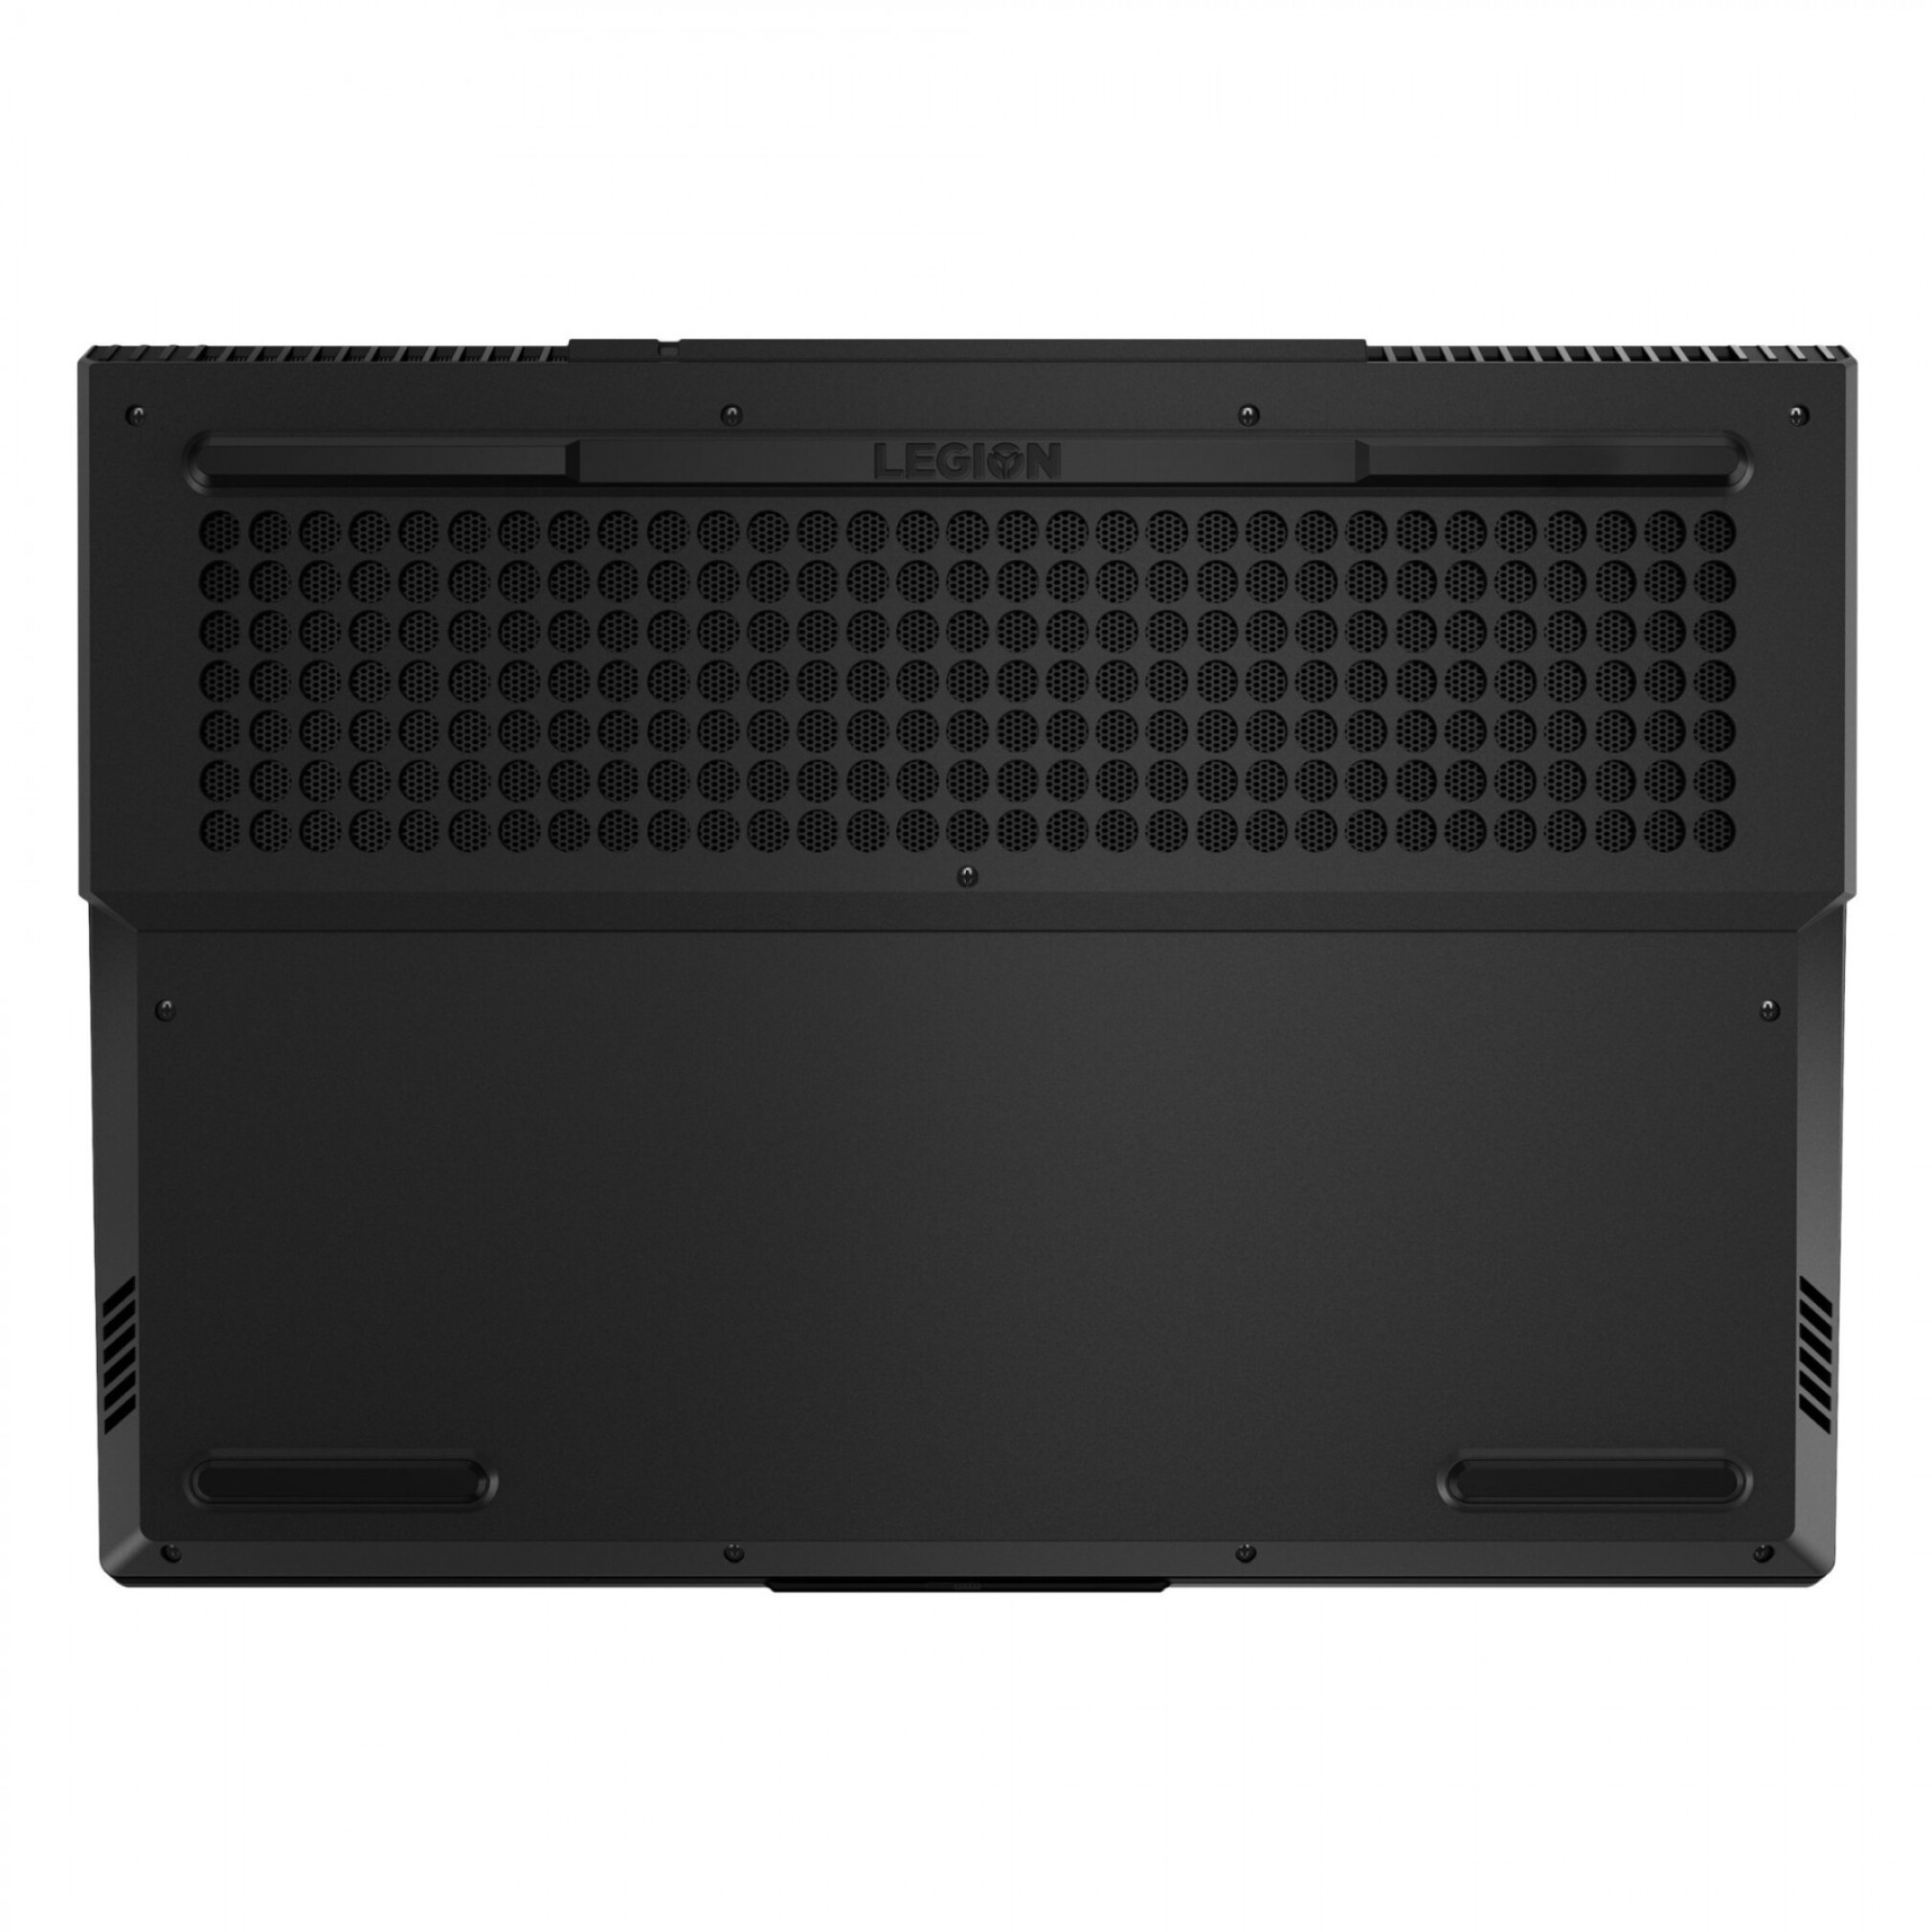  رید و قیمت لپ تاپ Lenovo Legion 5 15ARH05H 8 با گرافیک 4 گیگ انویدیا Geforce Gtx 1650 